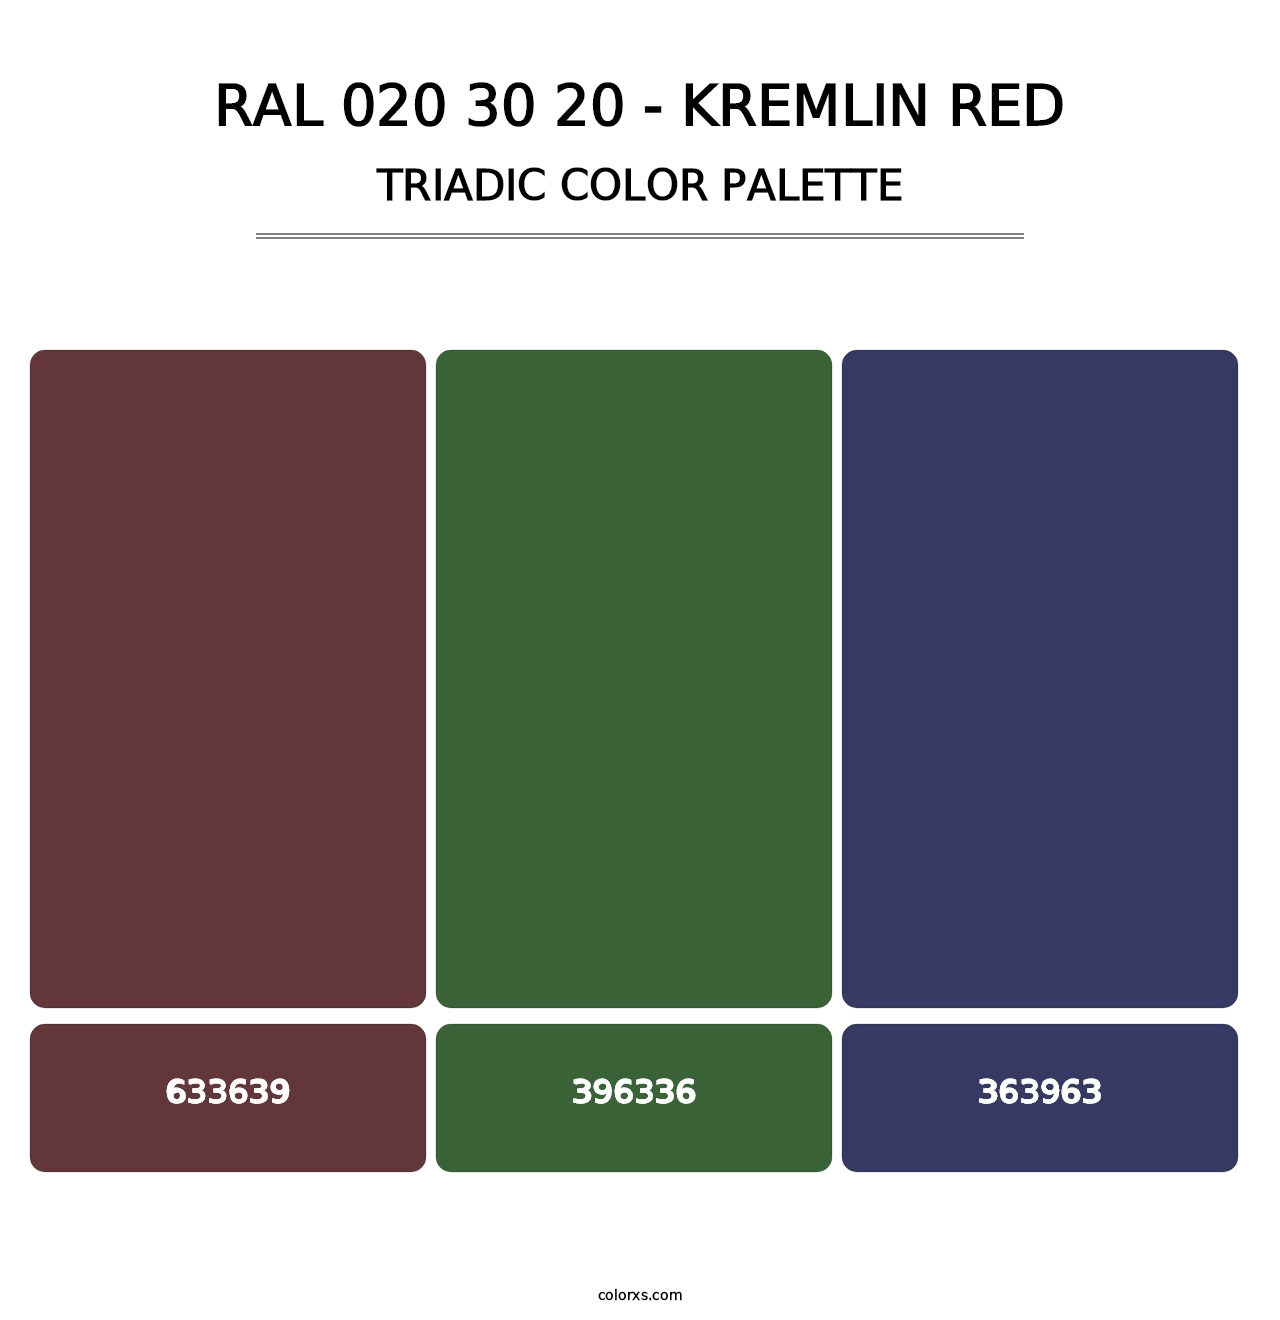 RAL 020 30 20 - Kremlin Red - Triadic Color Palette